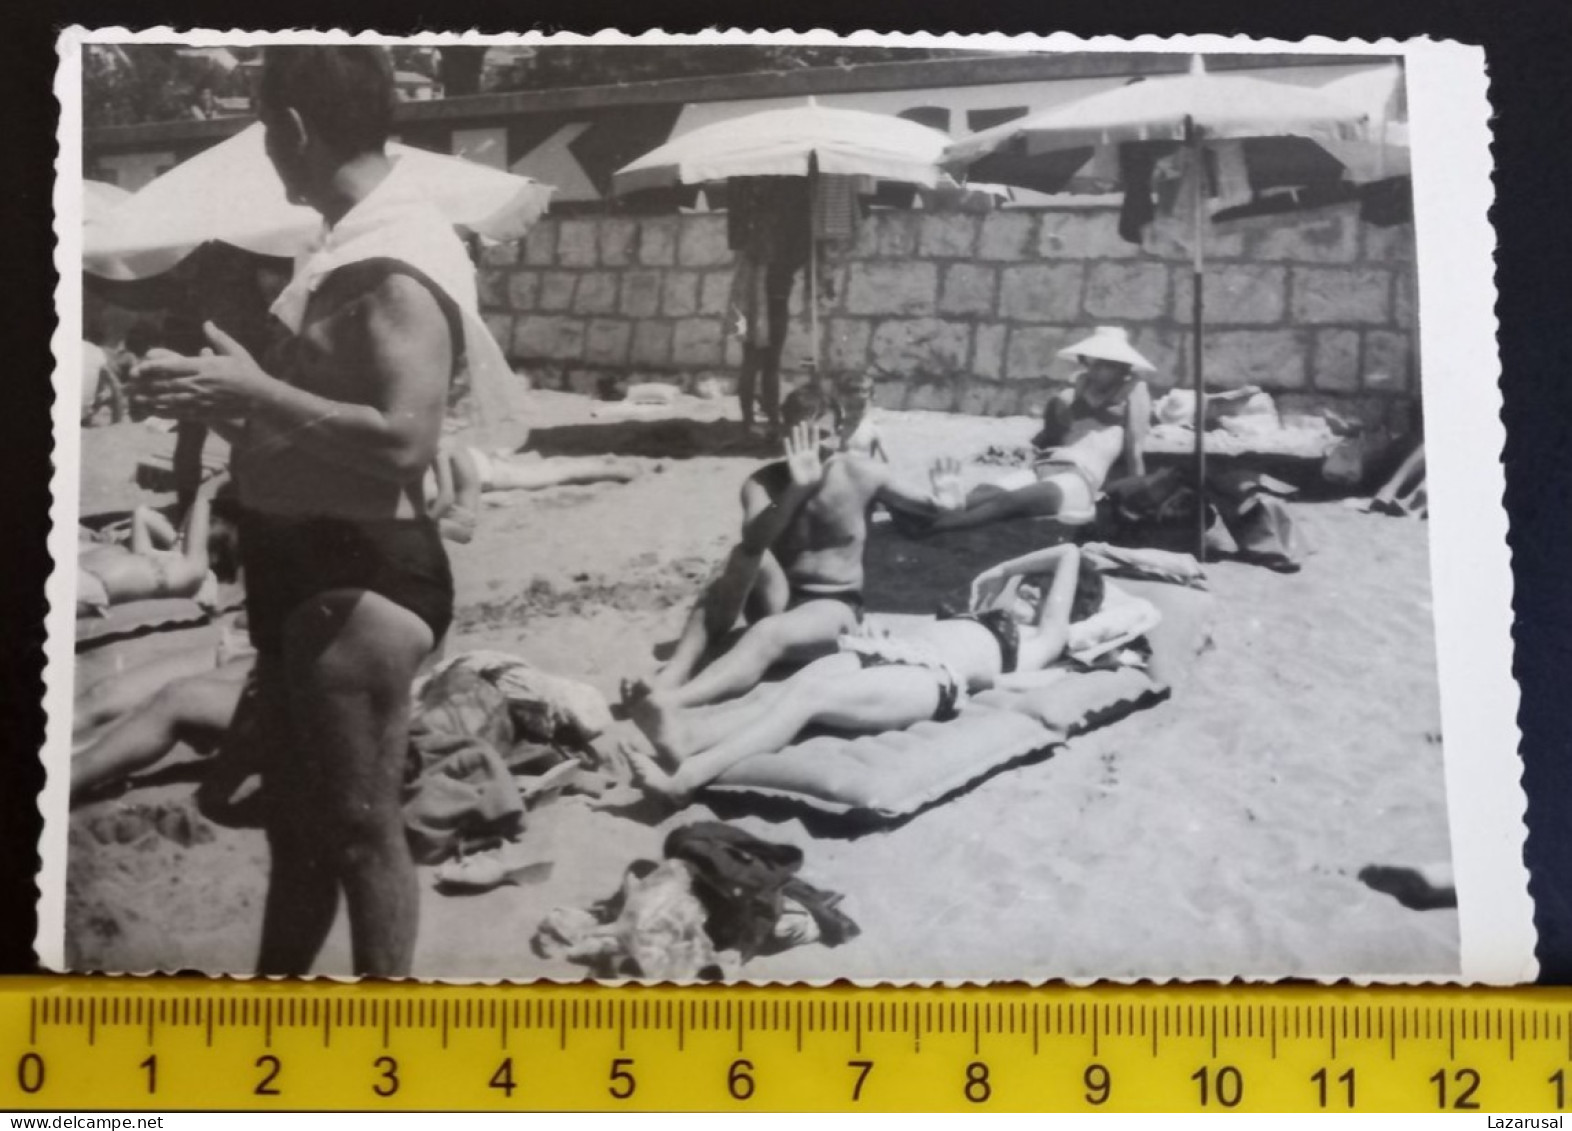 #15   Man On Vacation - On The Beach In A Bathing Suit / Homme En Vacances - Sur La Plage En Maillot De Bain - Anonyme Personen